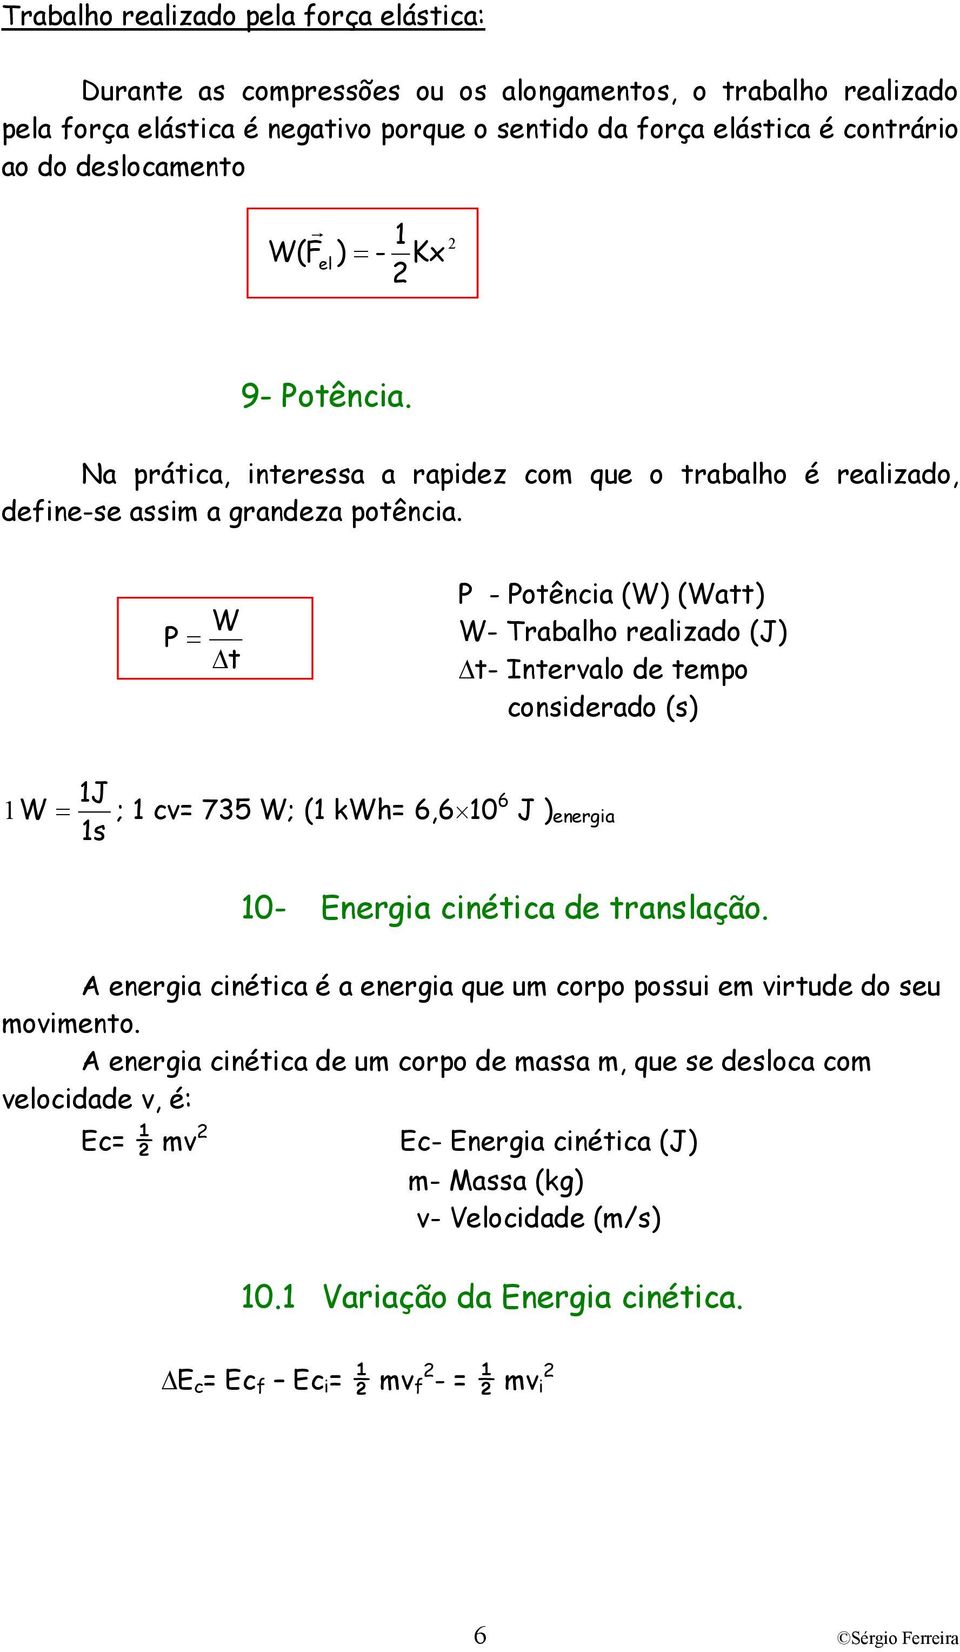 = W t - otência (W) (Watt) W- Tabao eaizado (J) t- Intevao de tempo consideado (s) 1J 1 W = ; 1 cv= 735 W; (1 kw= 6,6 10 6 J ) enegia 1s 10- Enegia cinética de tansação.